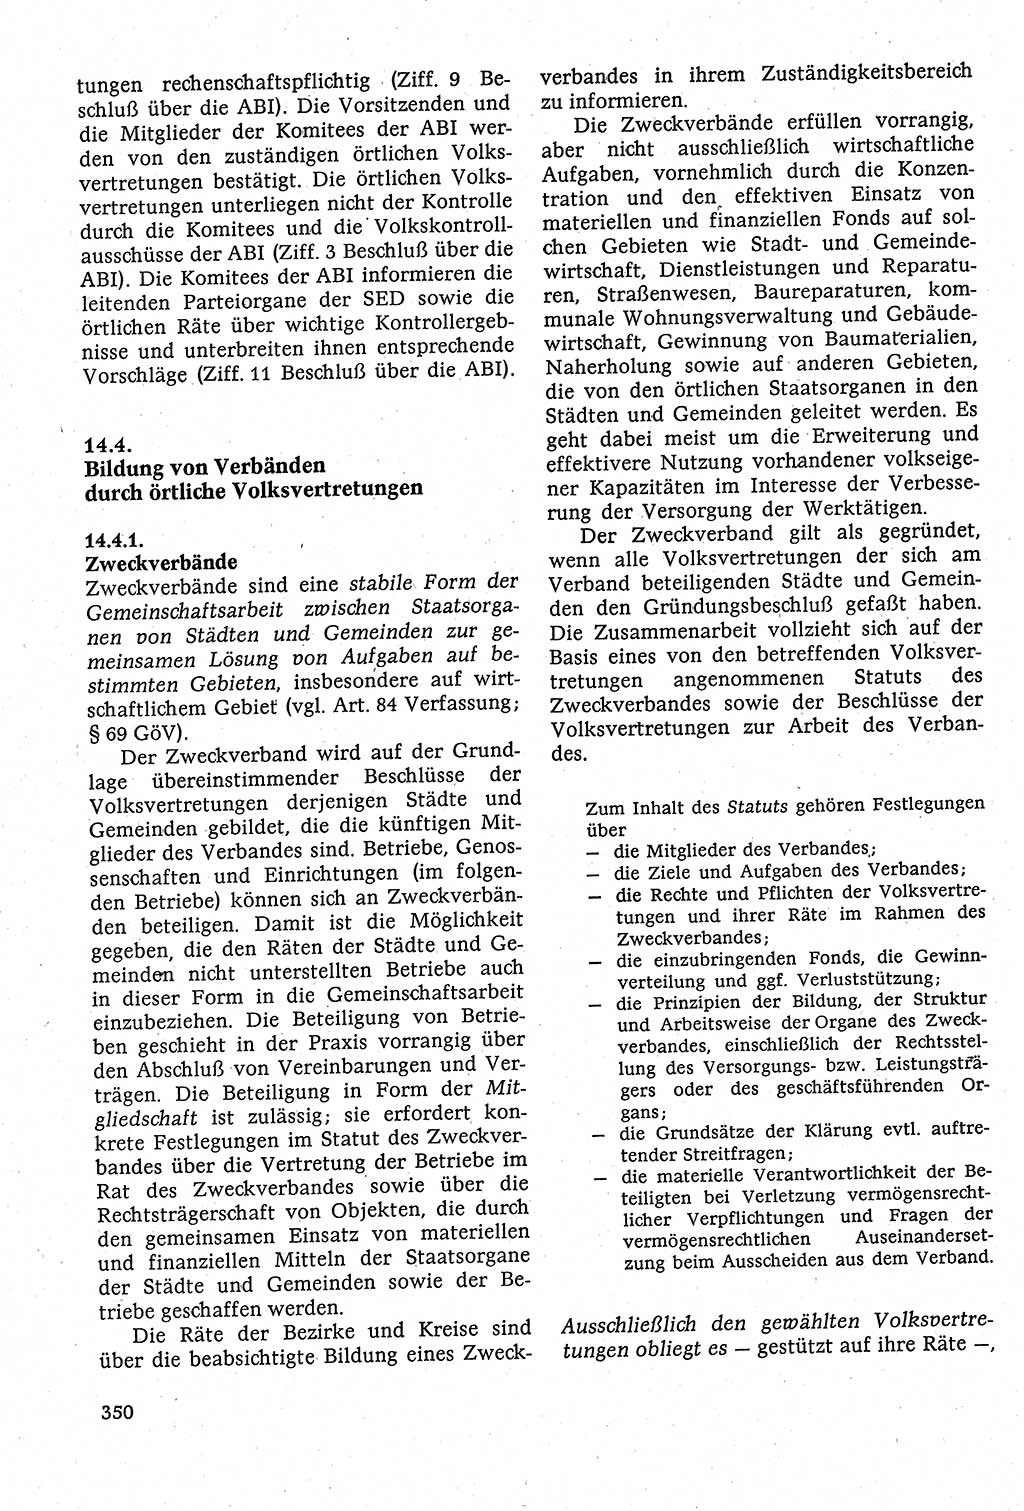 Staatsrecht der DDR [Deutsche Demokratische Republik (DDR)], Lehrbuch 1984, Seite 350 (St.-R. DDR Lb. 1984, S. 350)